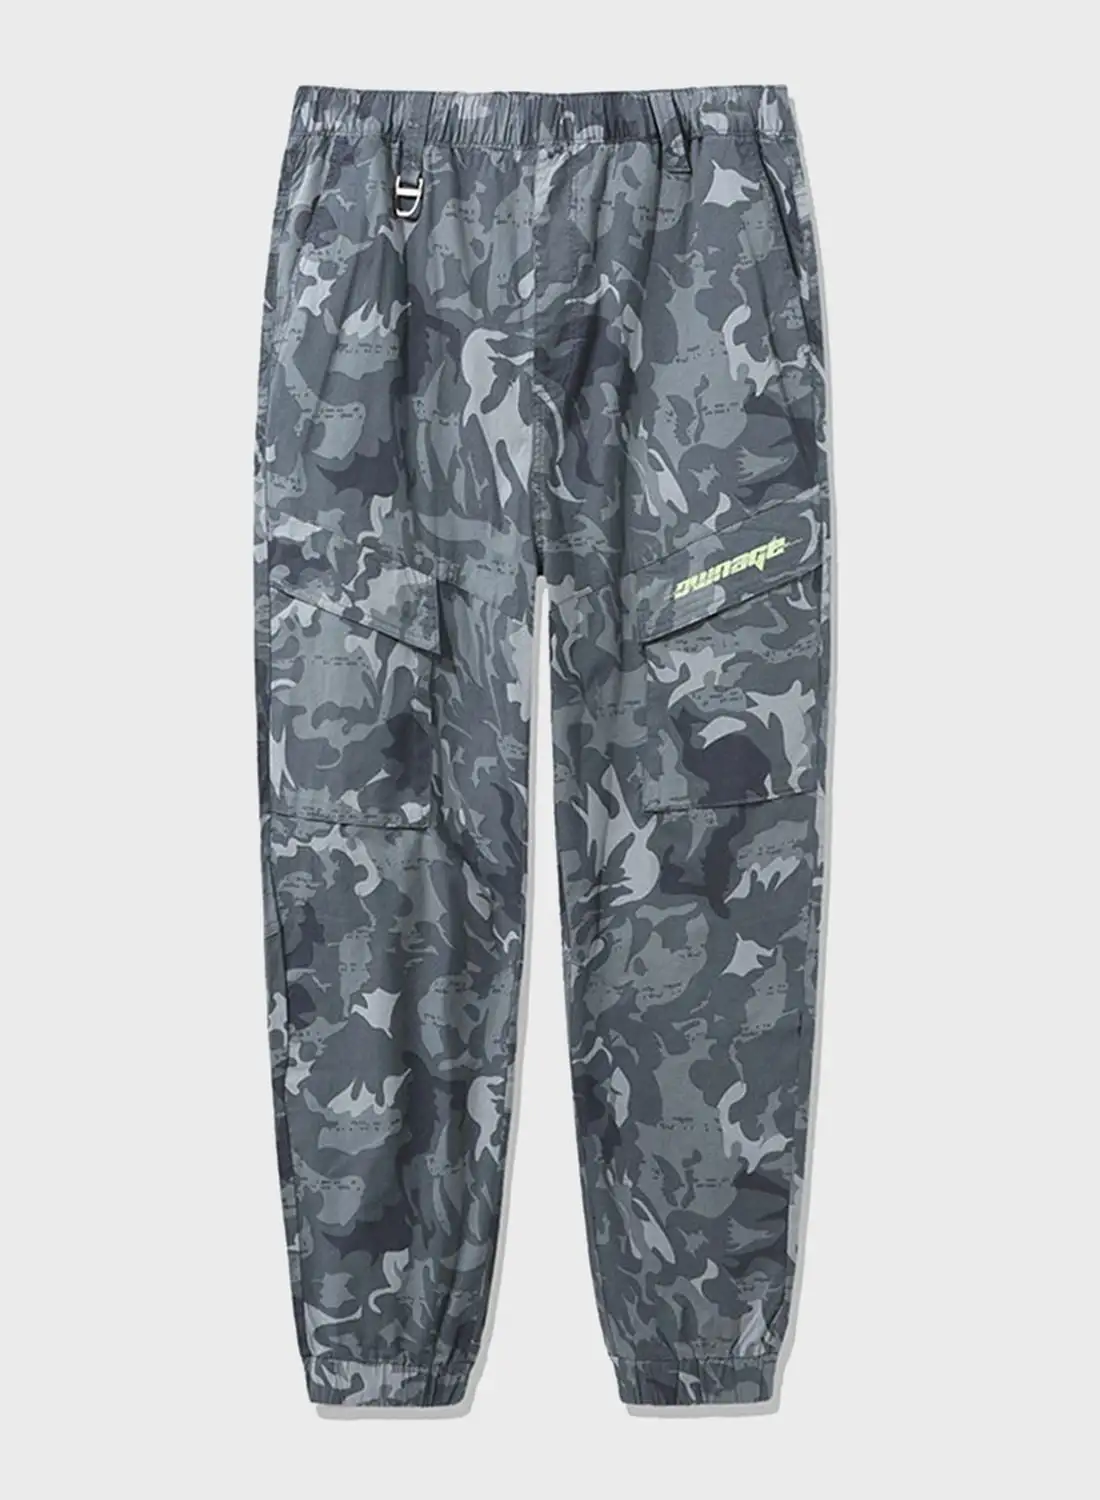 SEMIR Casual Printed Sweatpants